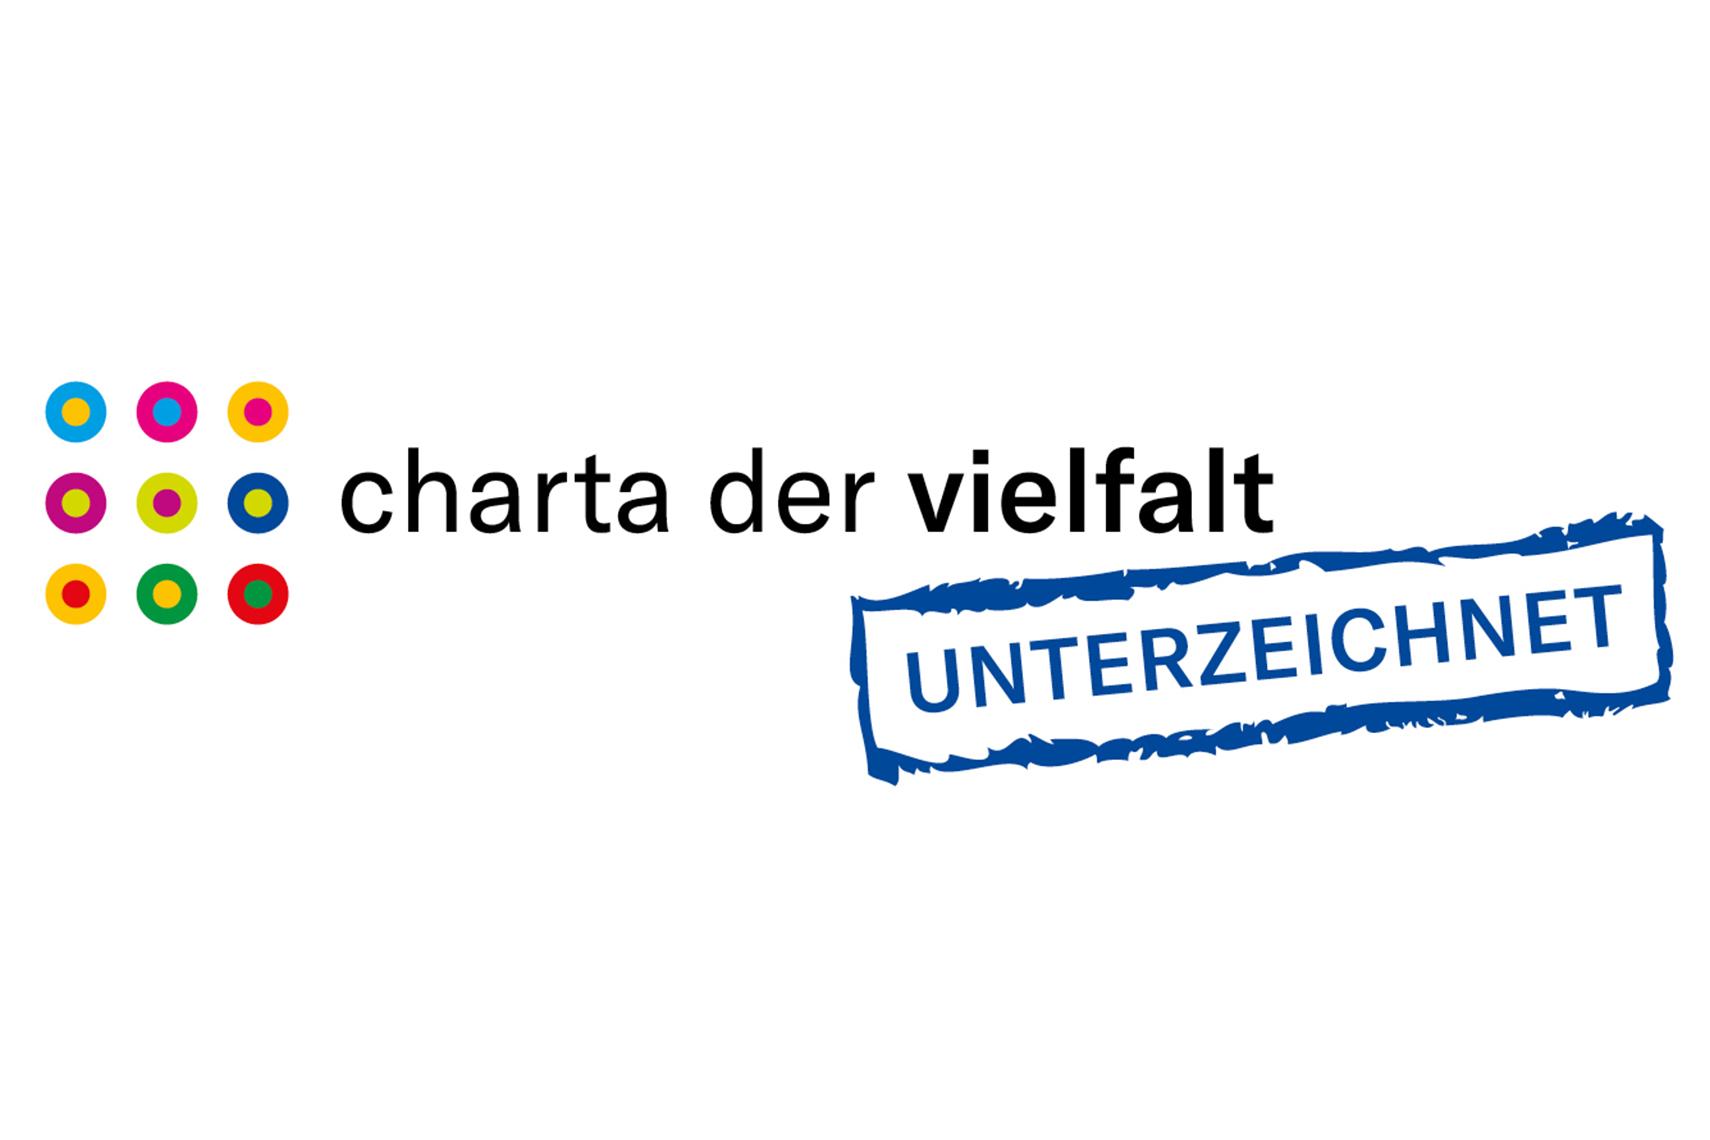 Das Logo der Charta der Vielfalt zeigt 9 zweifarbige Kugeln und den Schriftzug "Charta der Vielfalt – Für Diversity in der Arbeitswelt"